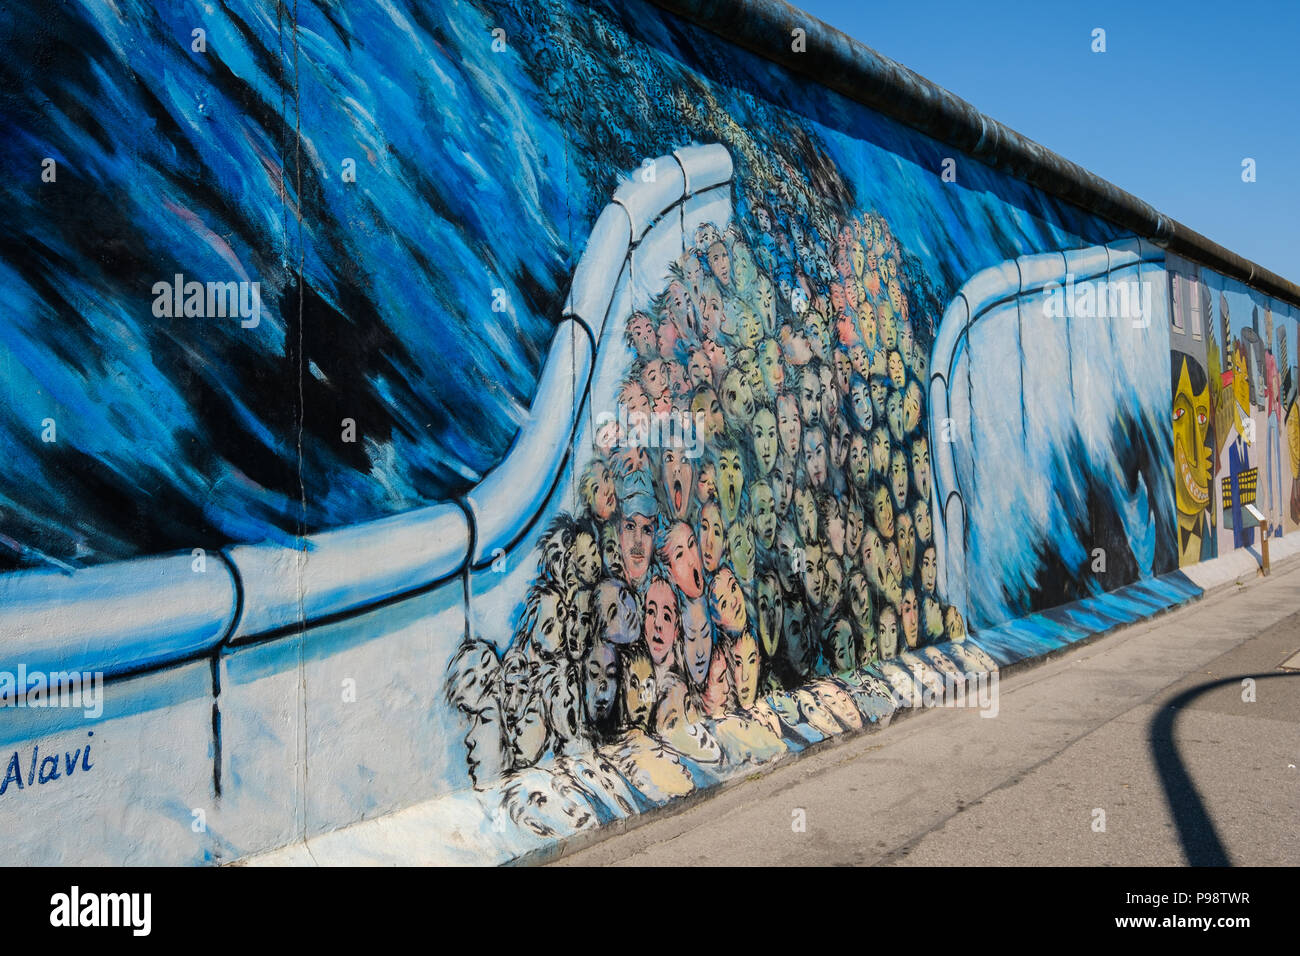 Berlin, Allemagne - juillet 2018 : peinture murale de Kani Alavi - 'C'est arrivé en novembre" (allemand : 'es geschah Novembre im') au mur de Berlin / Côté Est Ga Banque D'Images